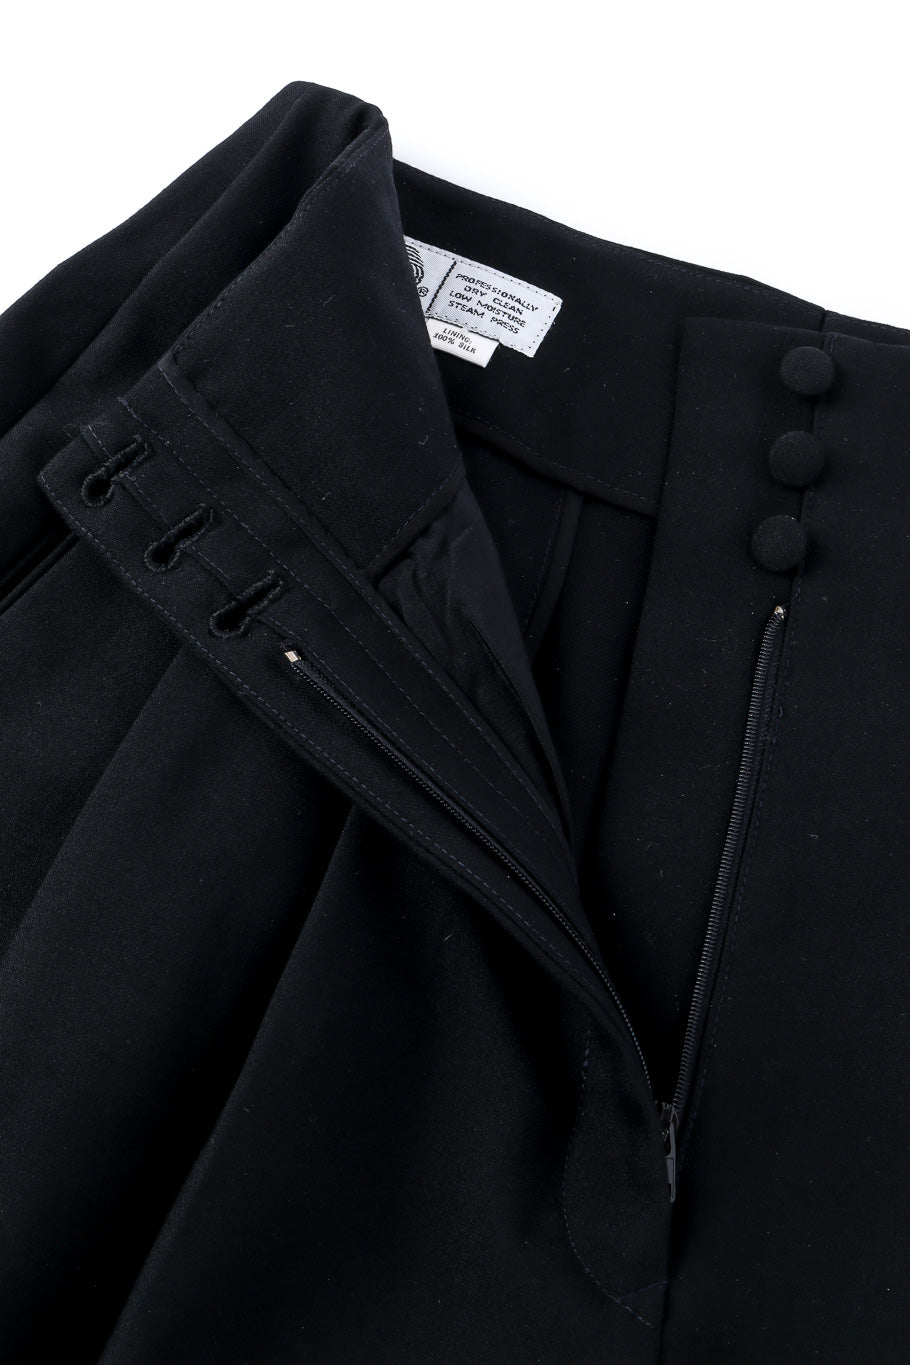 Vintage Richard Tyler Tuxedo Pant Suit pant button closure closeup @Recessla